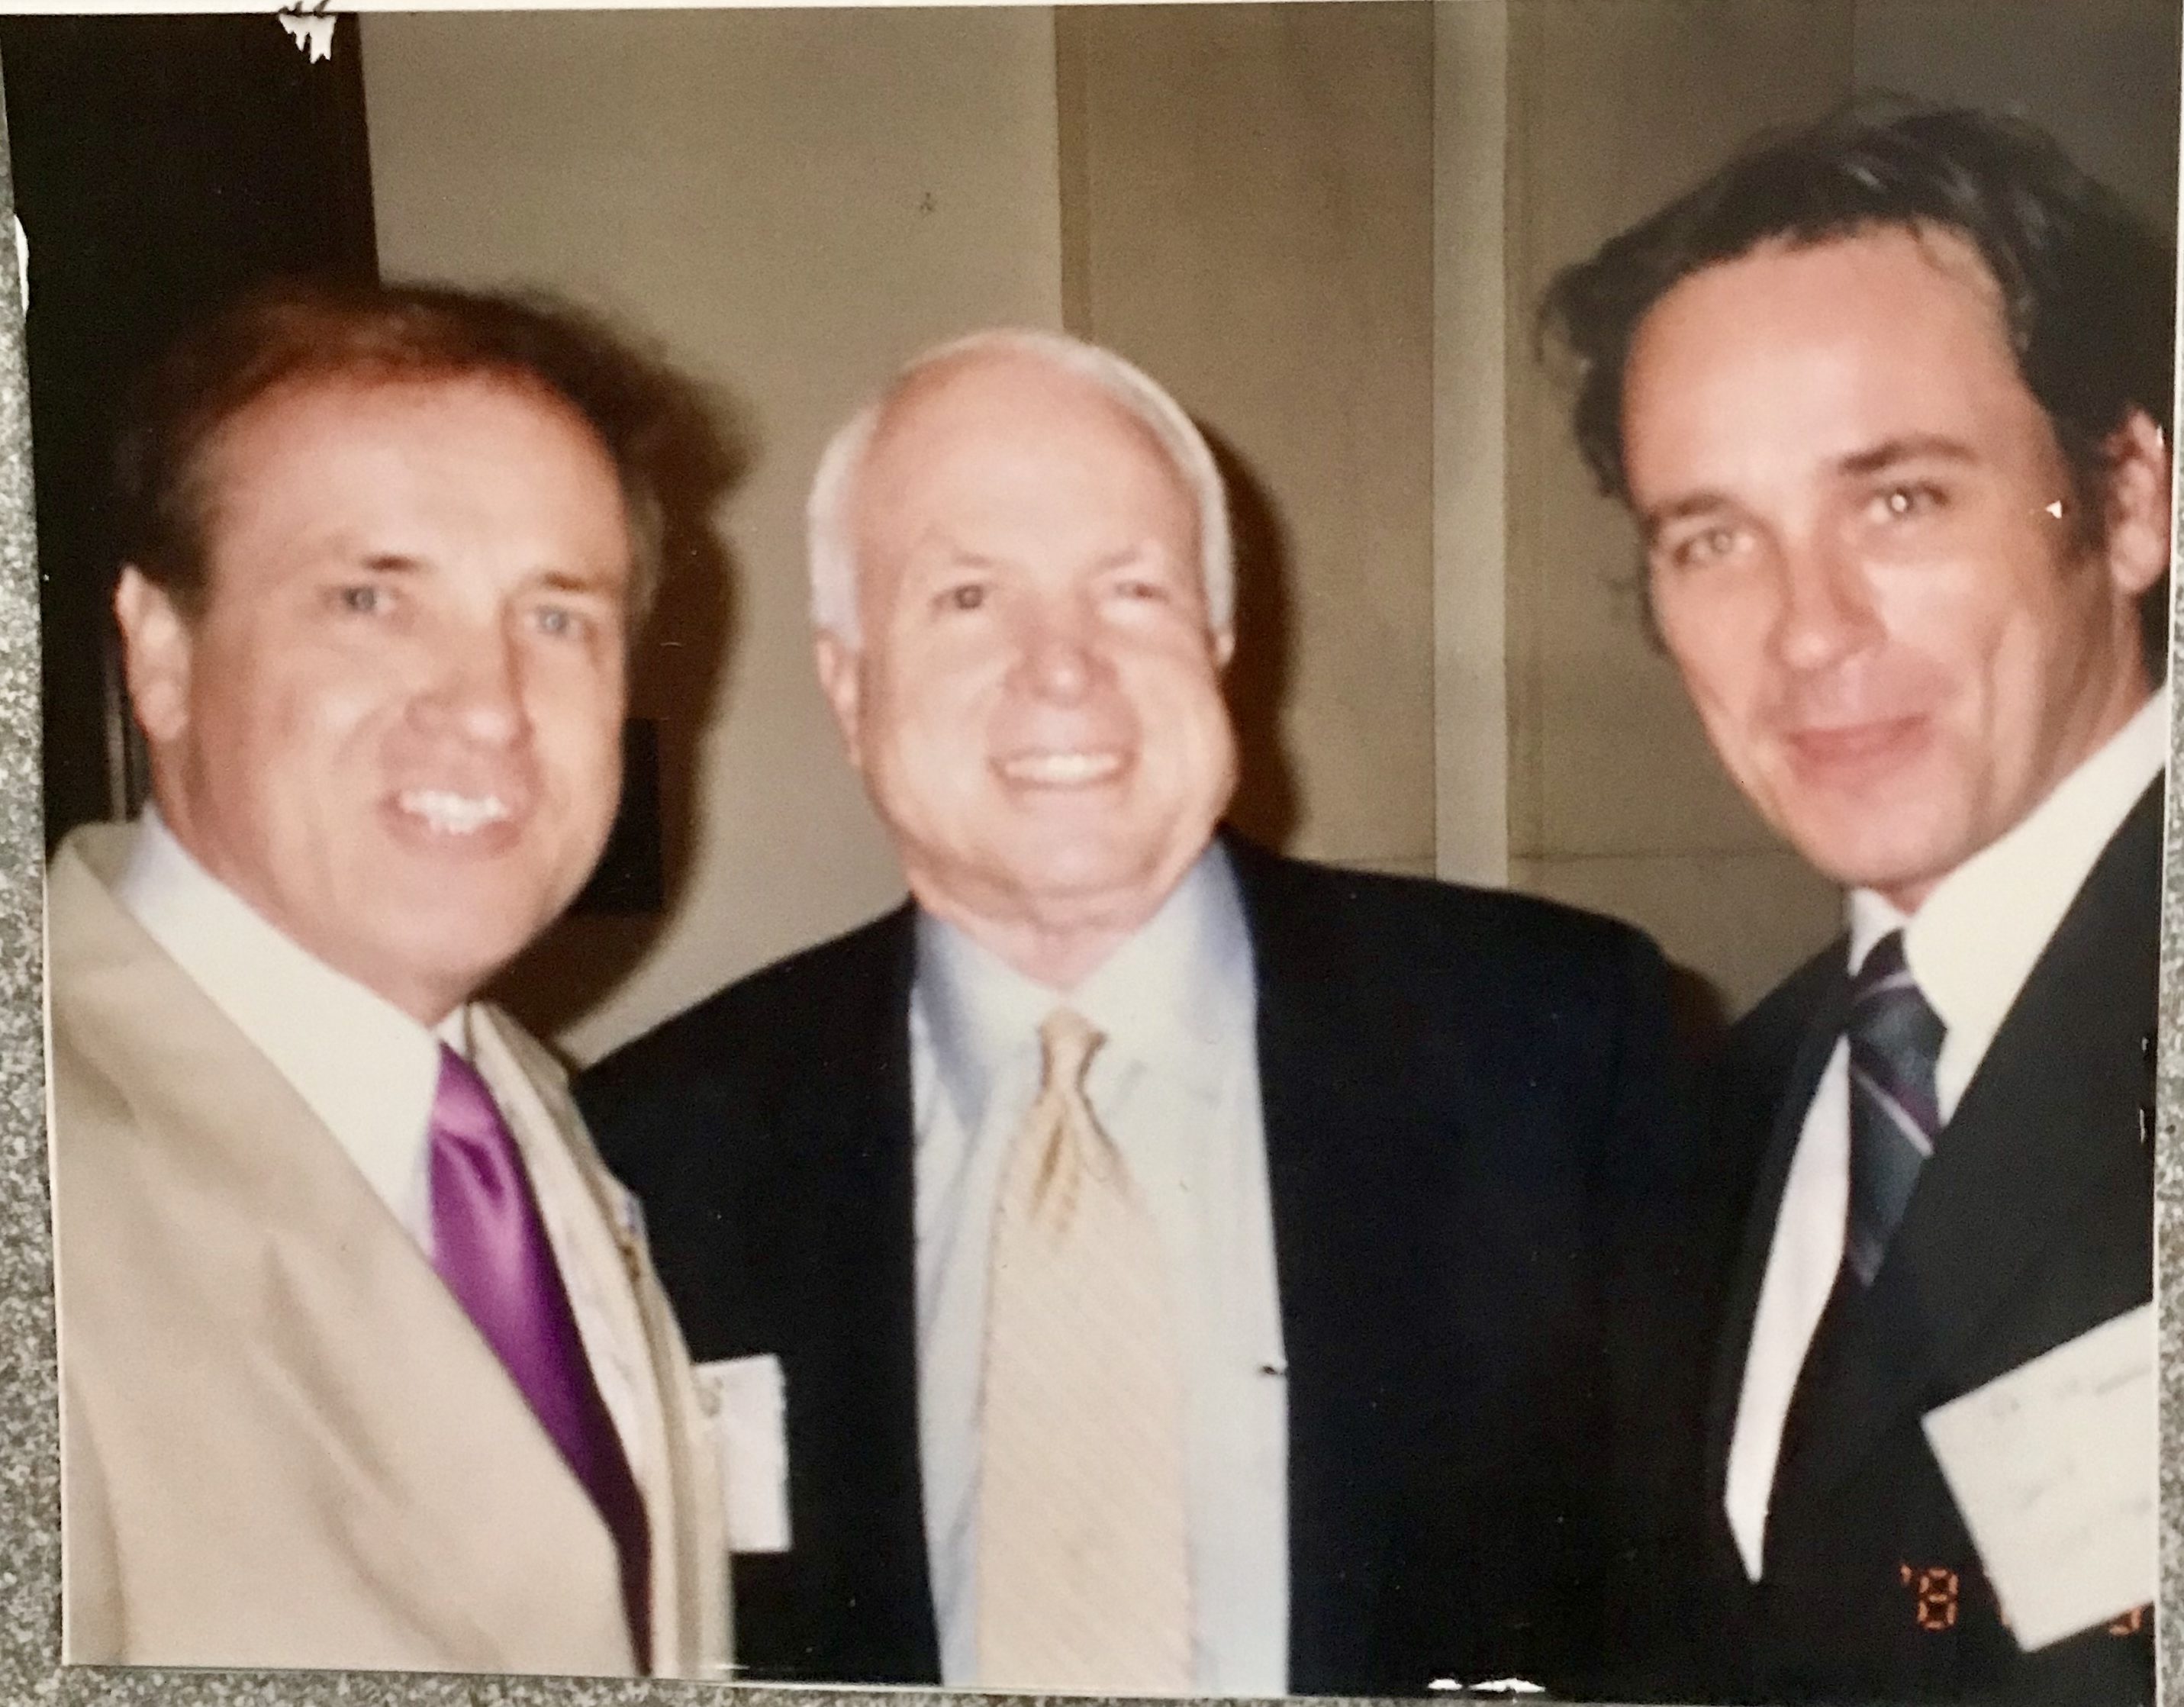 David Christian, John McCain and son David